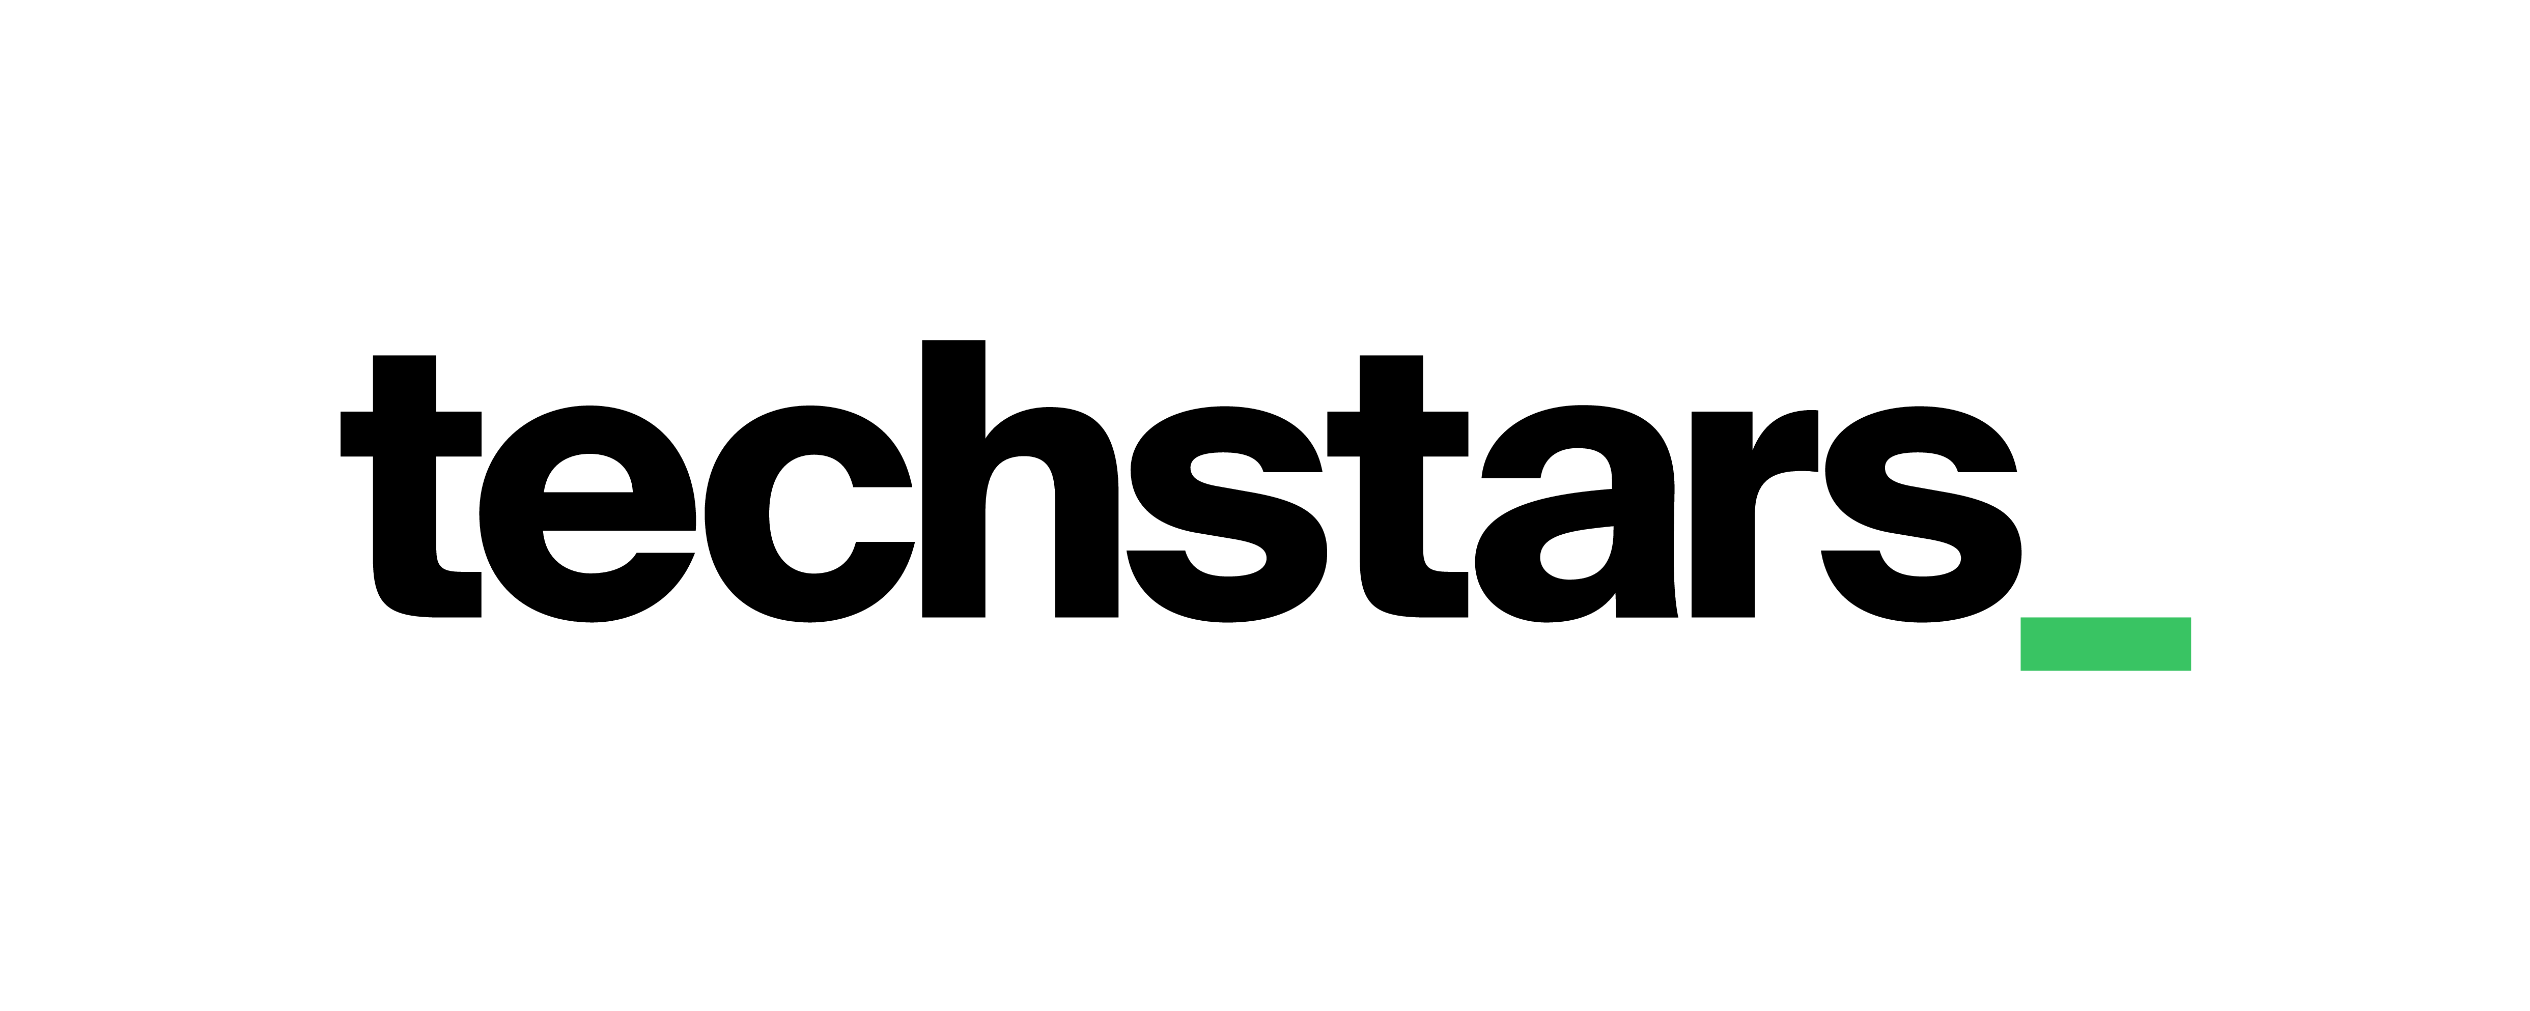 Ts logo